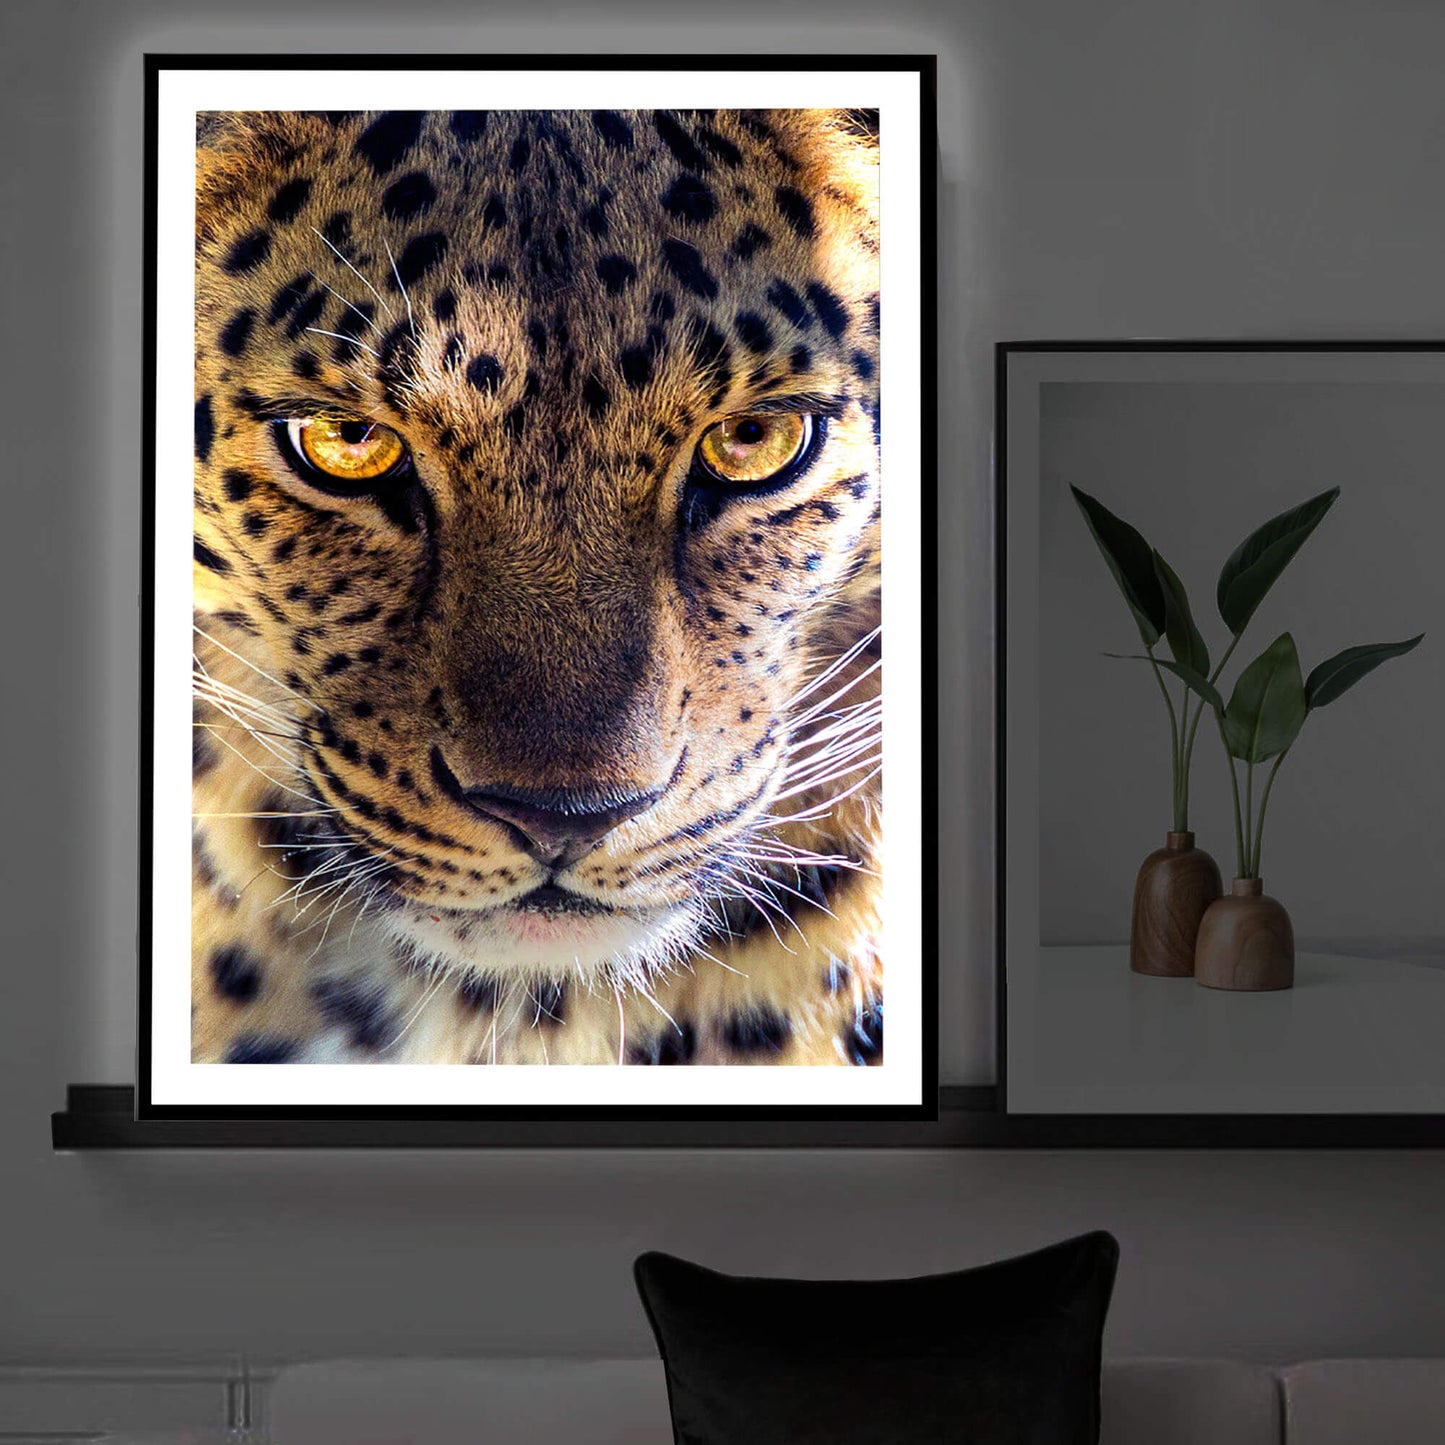 Luce artistica con cornice leopardata retroilluminata a LED (B)